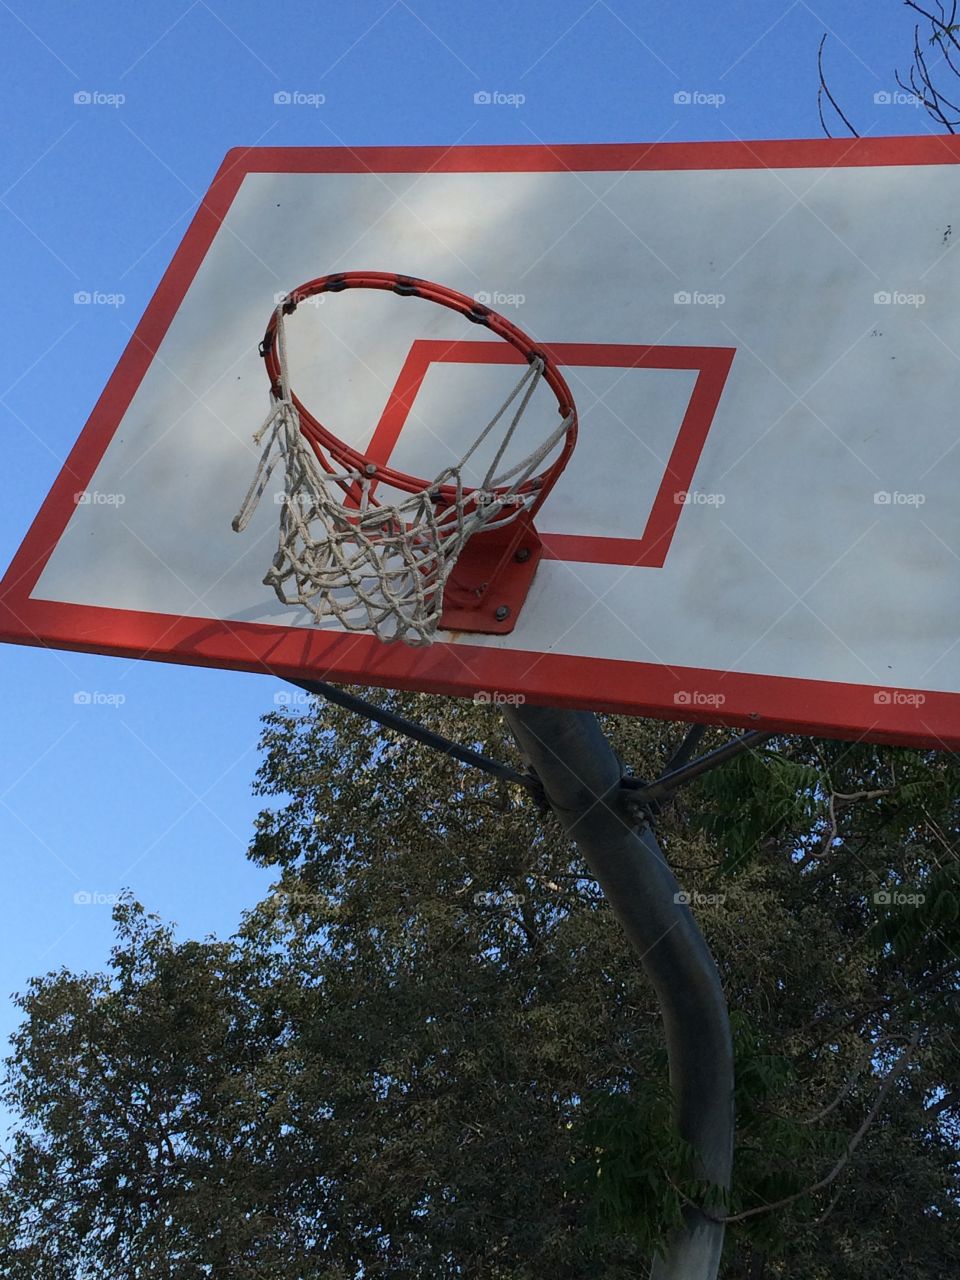 Basketball hoop/net/backboard